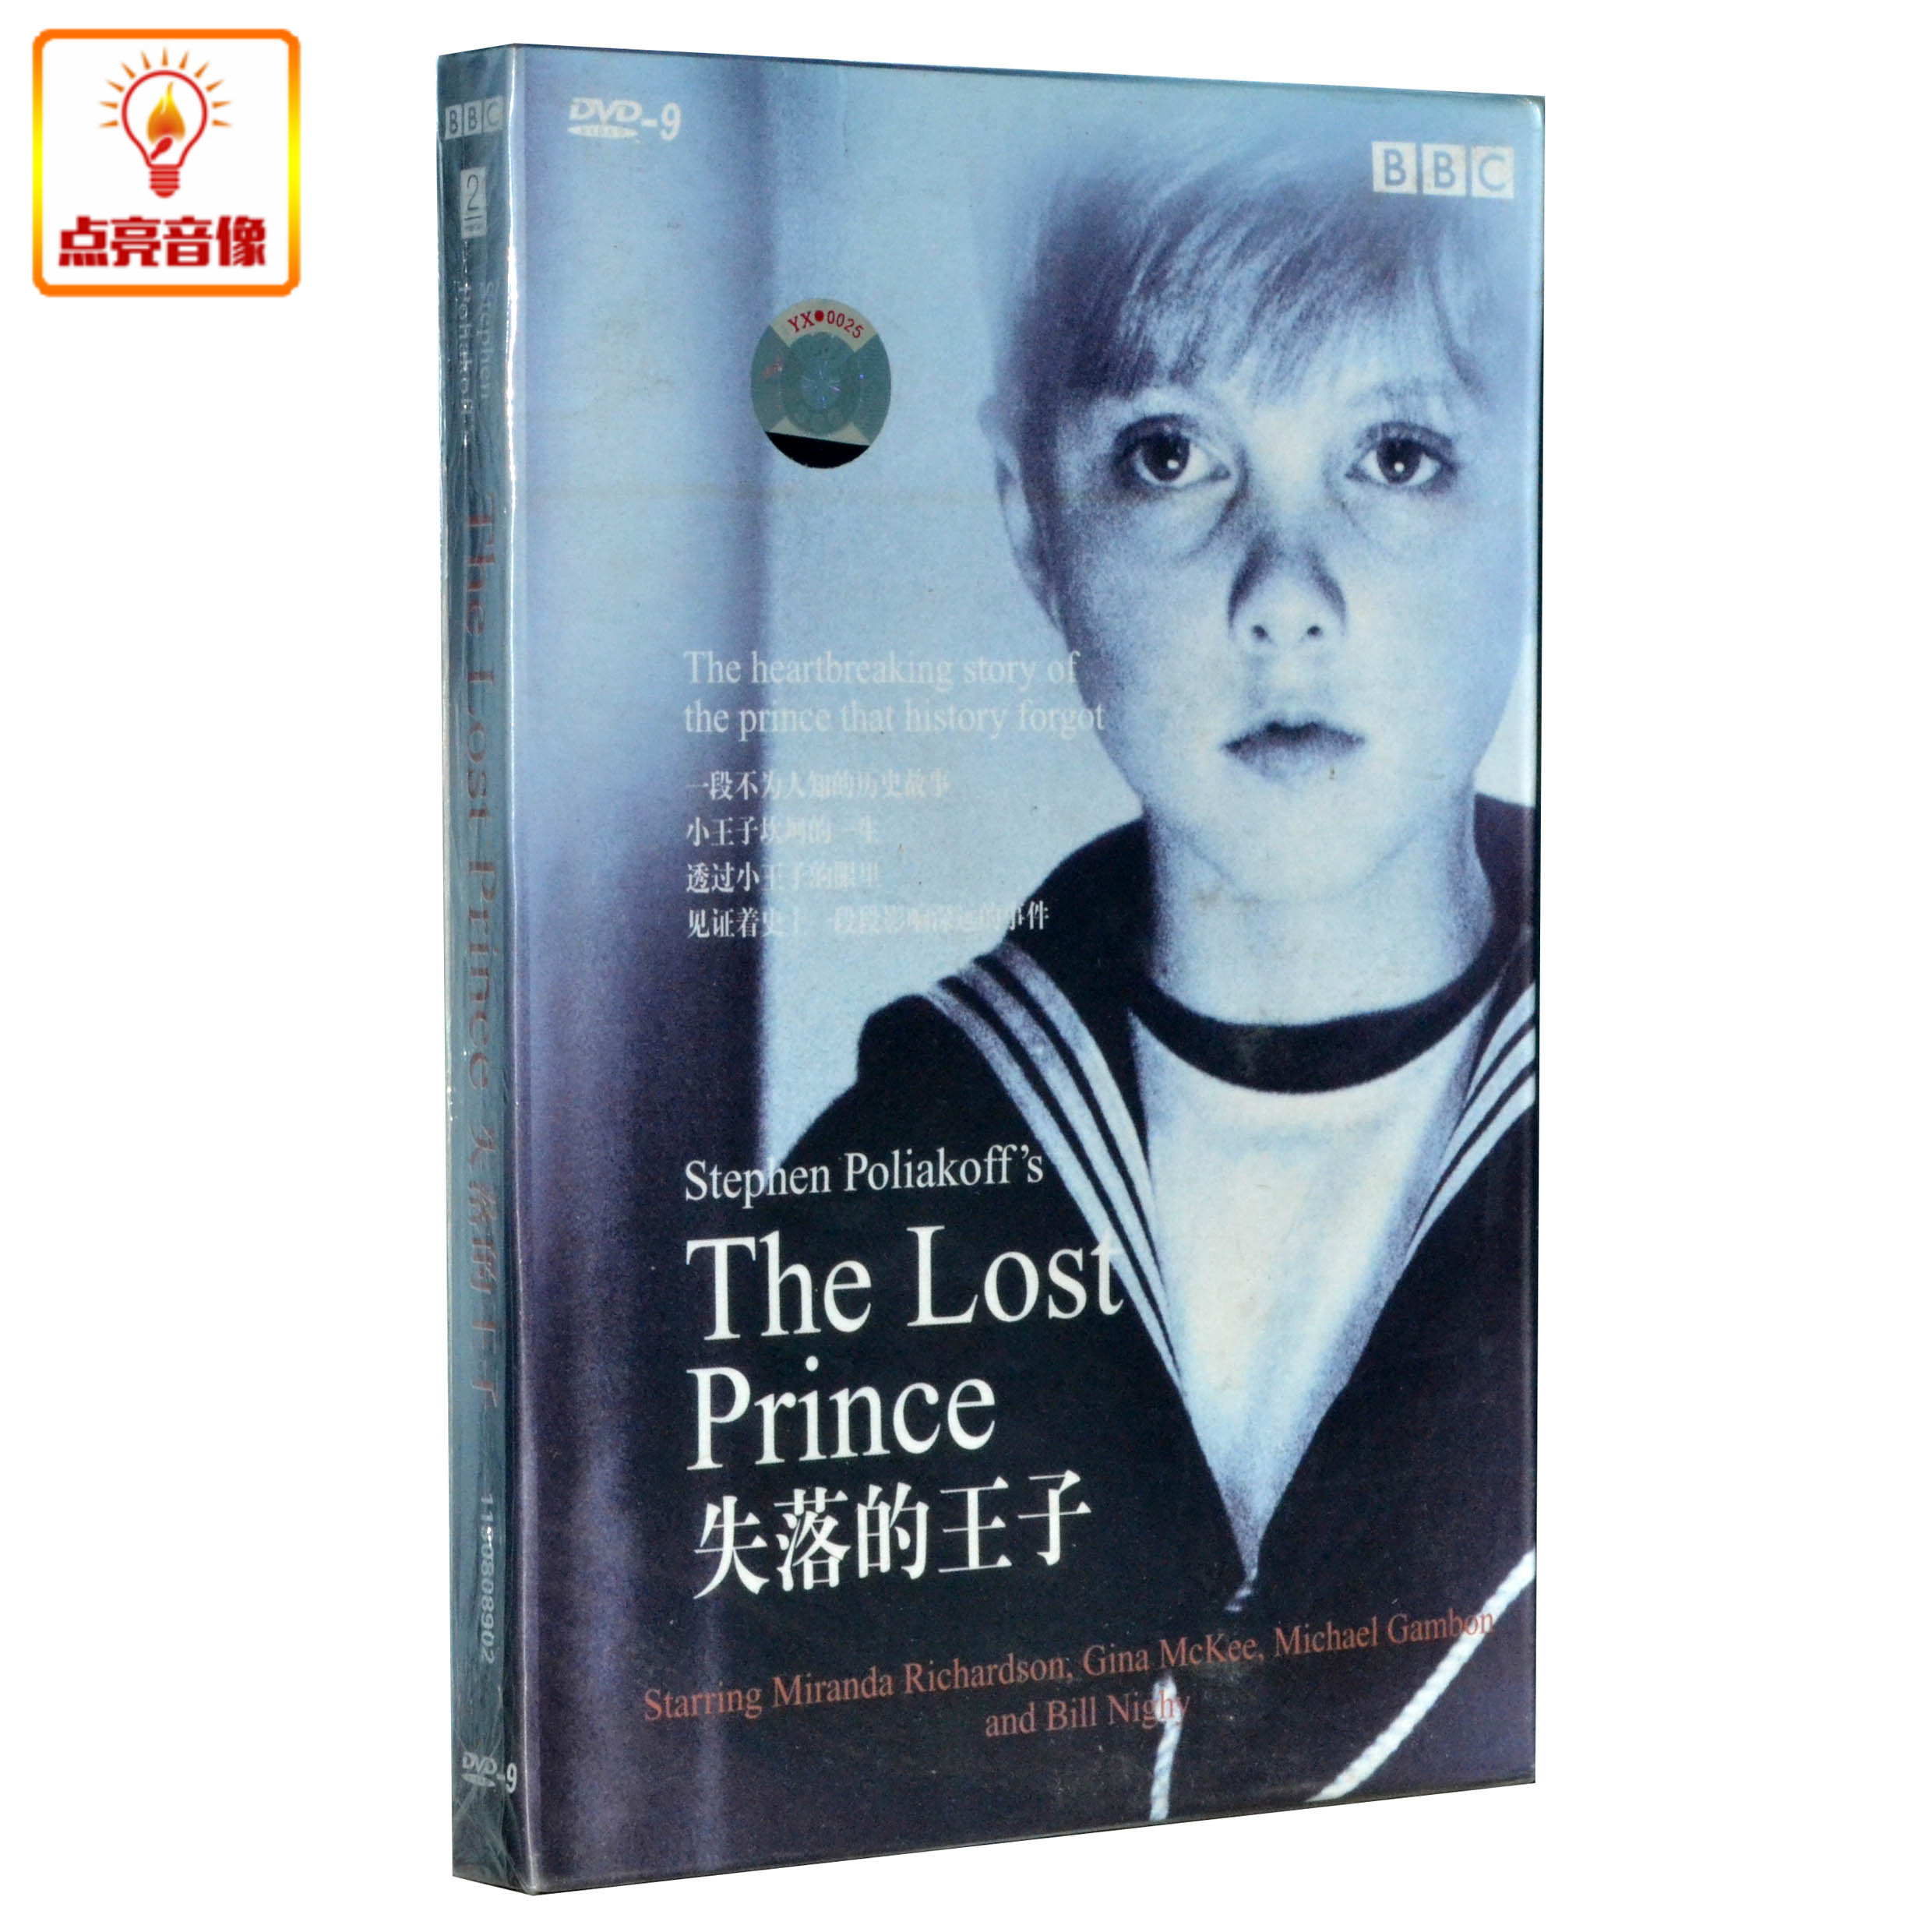 百科音像《失落的王子_The Lost Prince》DVD9-剧情-BBC